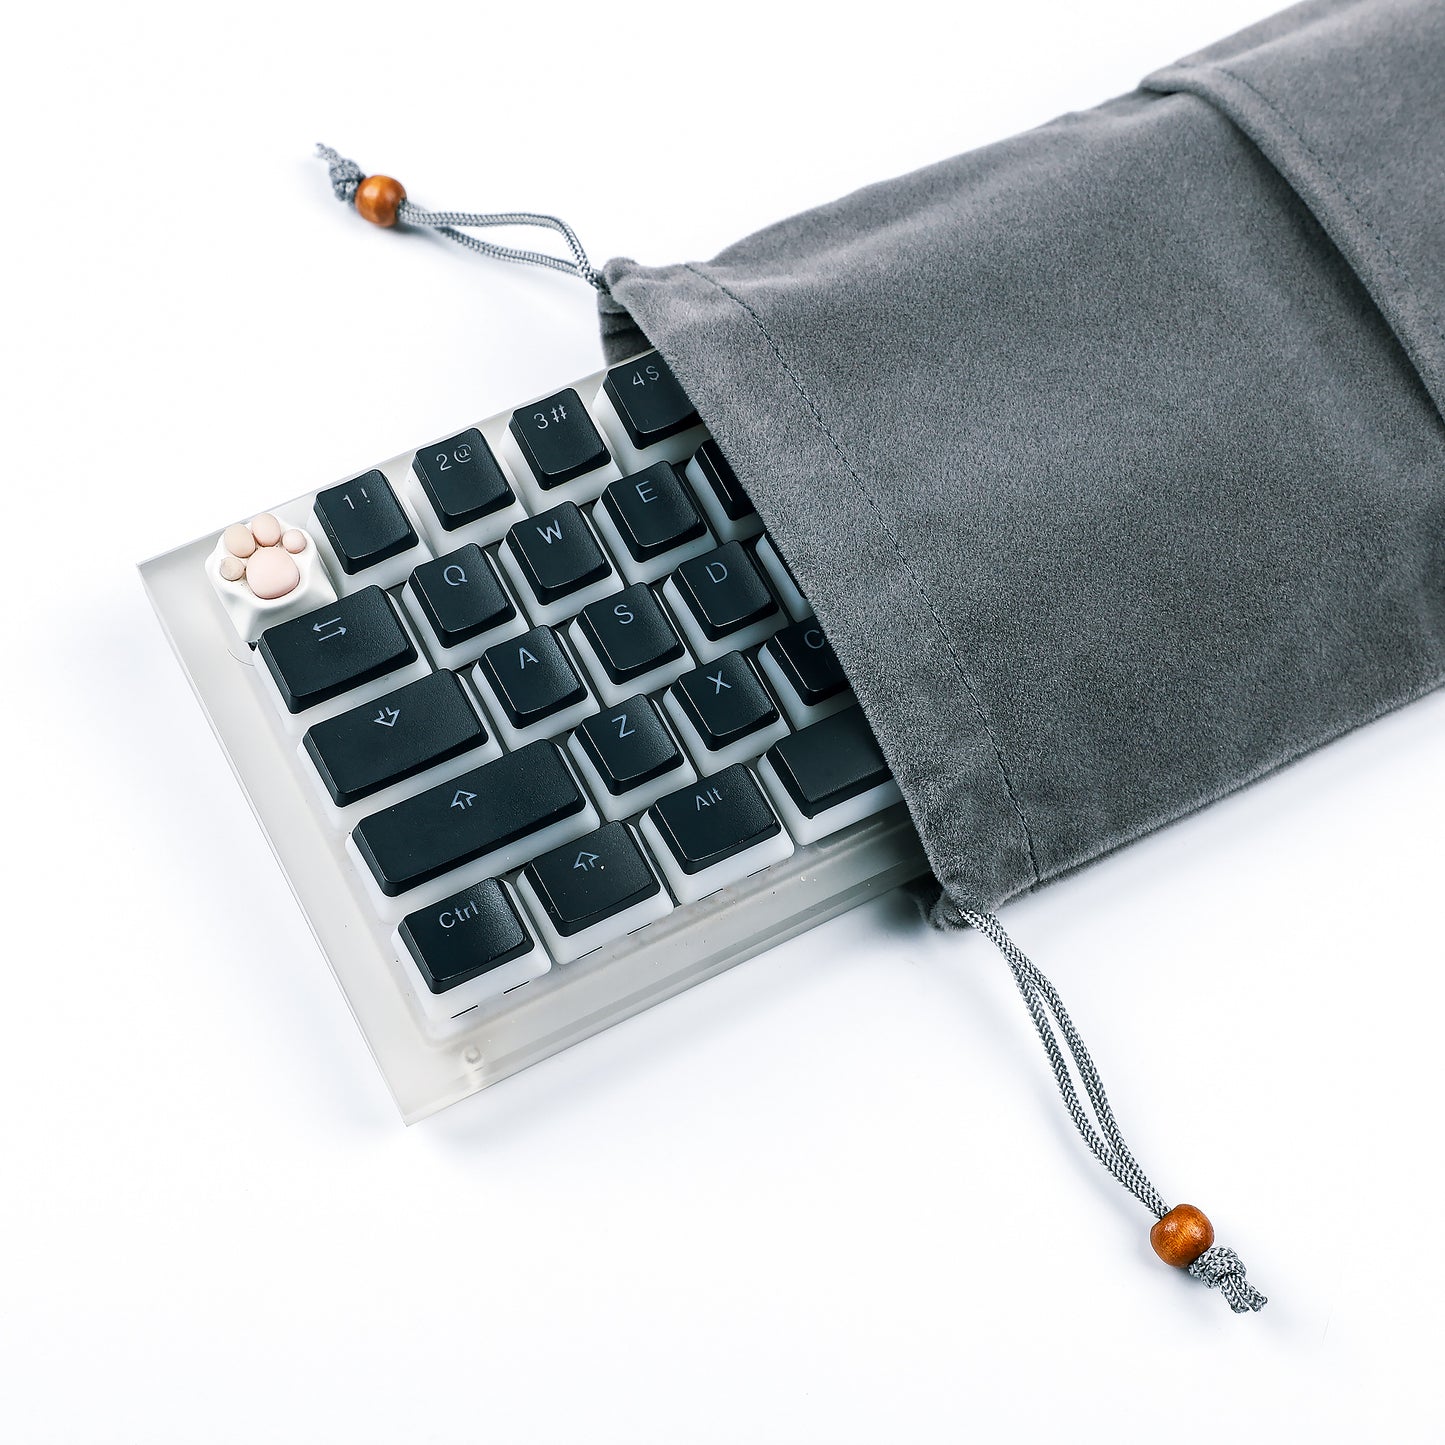 Dust Proof Portable Keyboard Bag(60 61 64 68 75 84 87 88 96 104 Key Filco DAS GMMK Using)